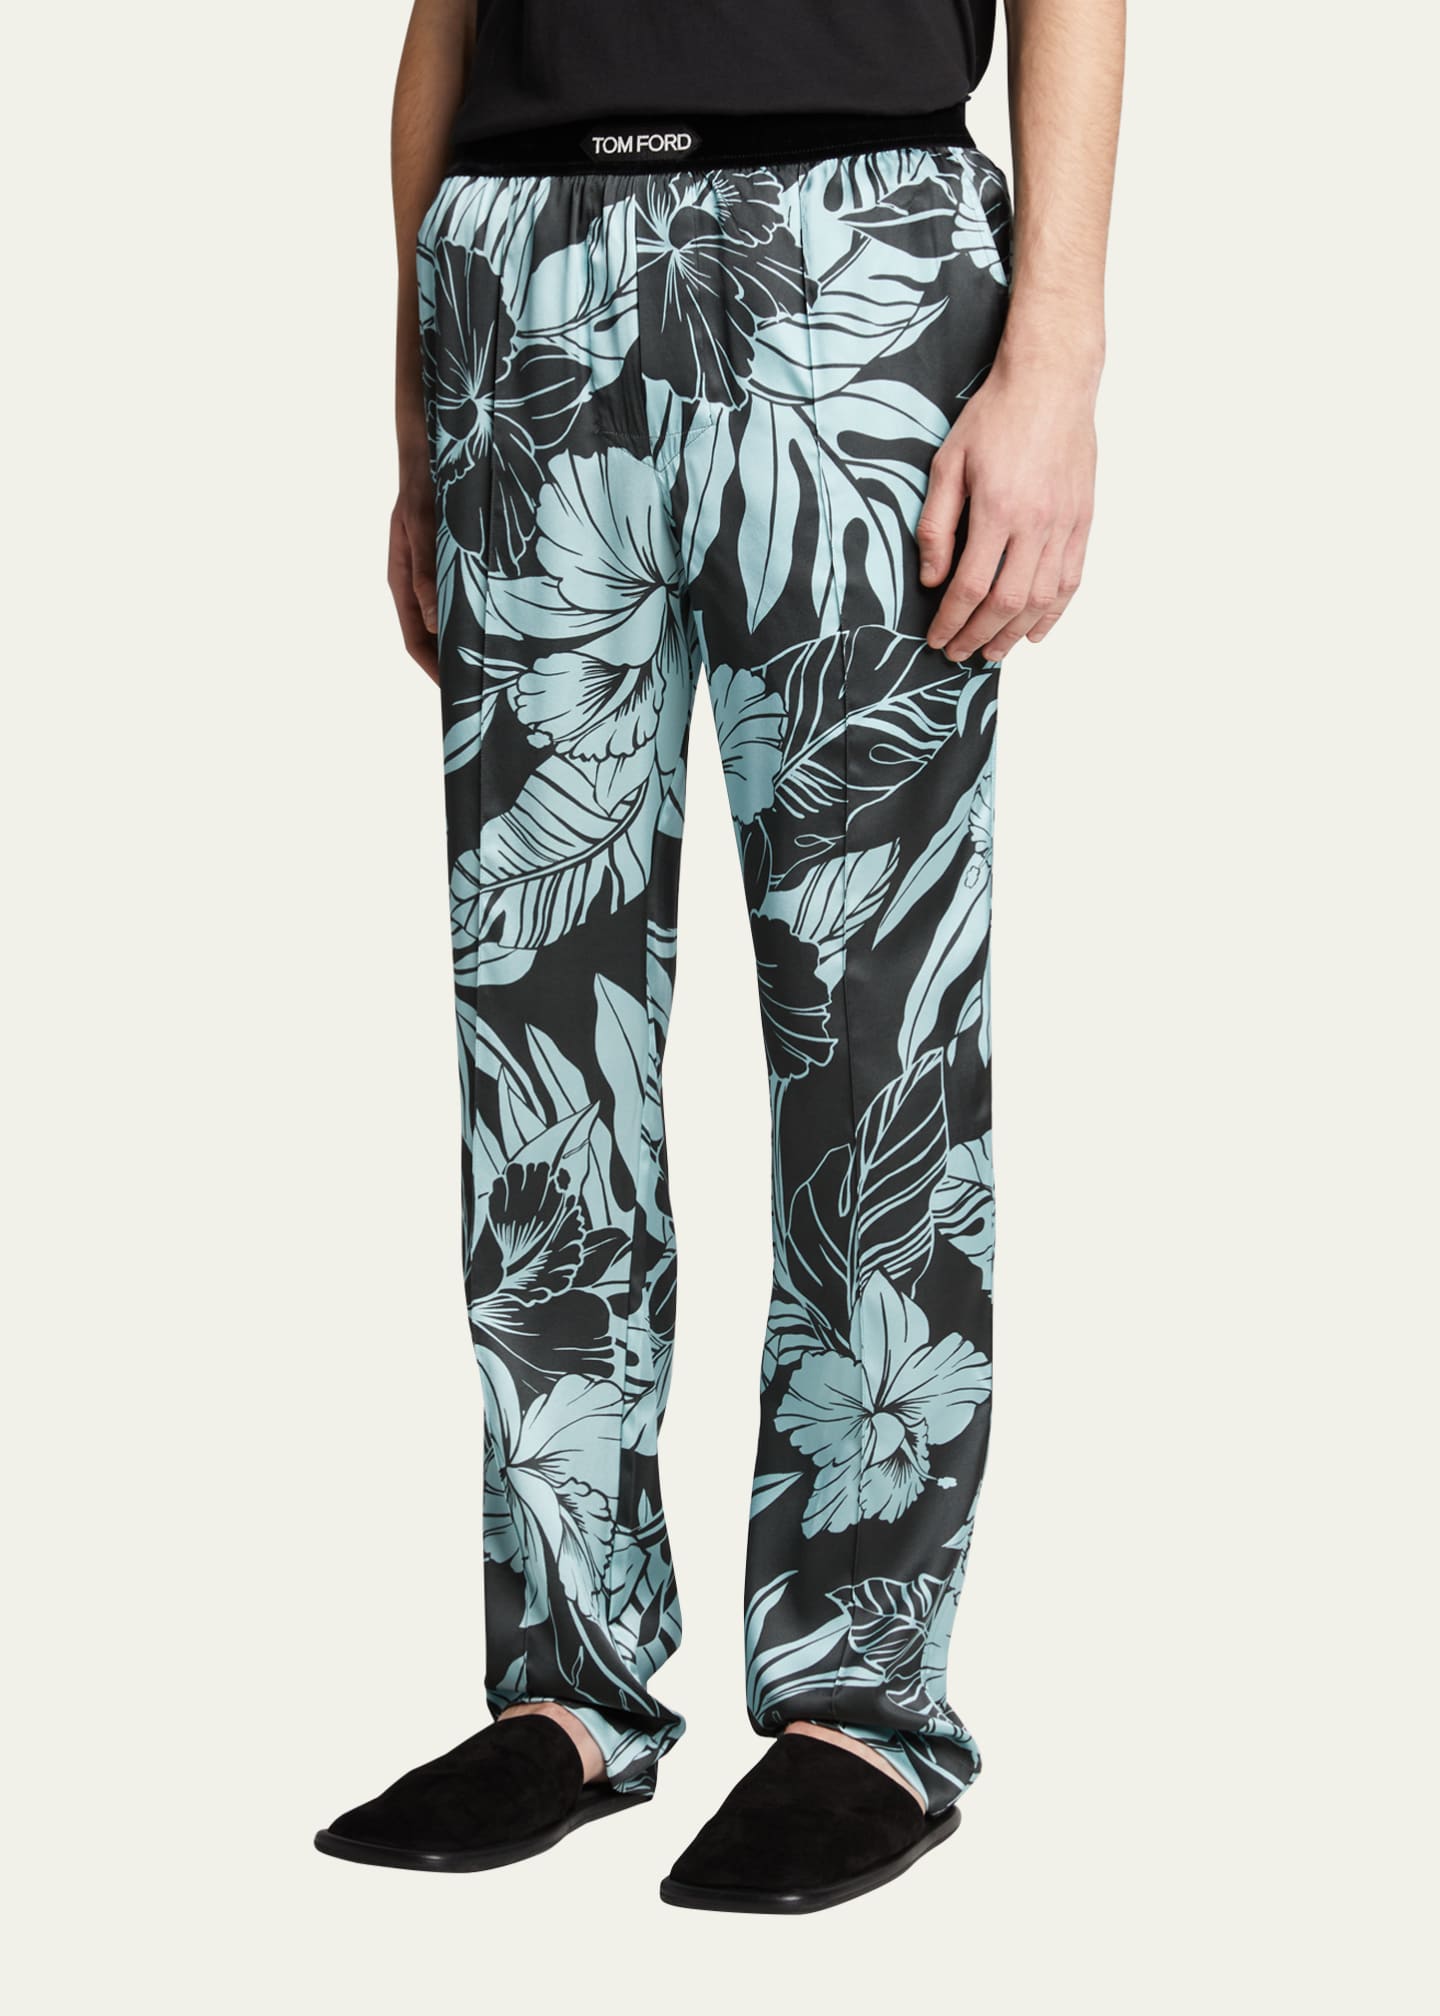 TOM FORD Men's Printed Silk Pajama Pants - Bergdorf Goodman